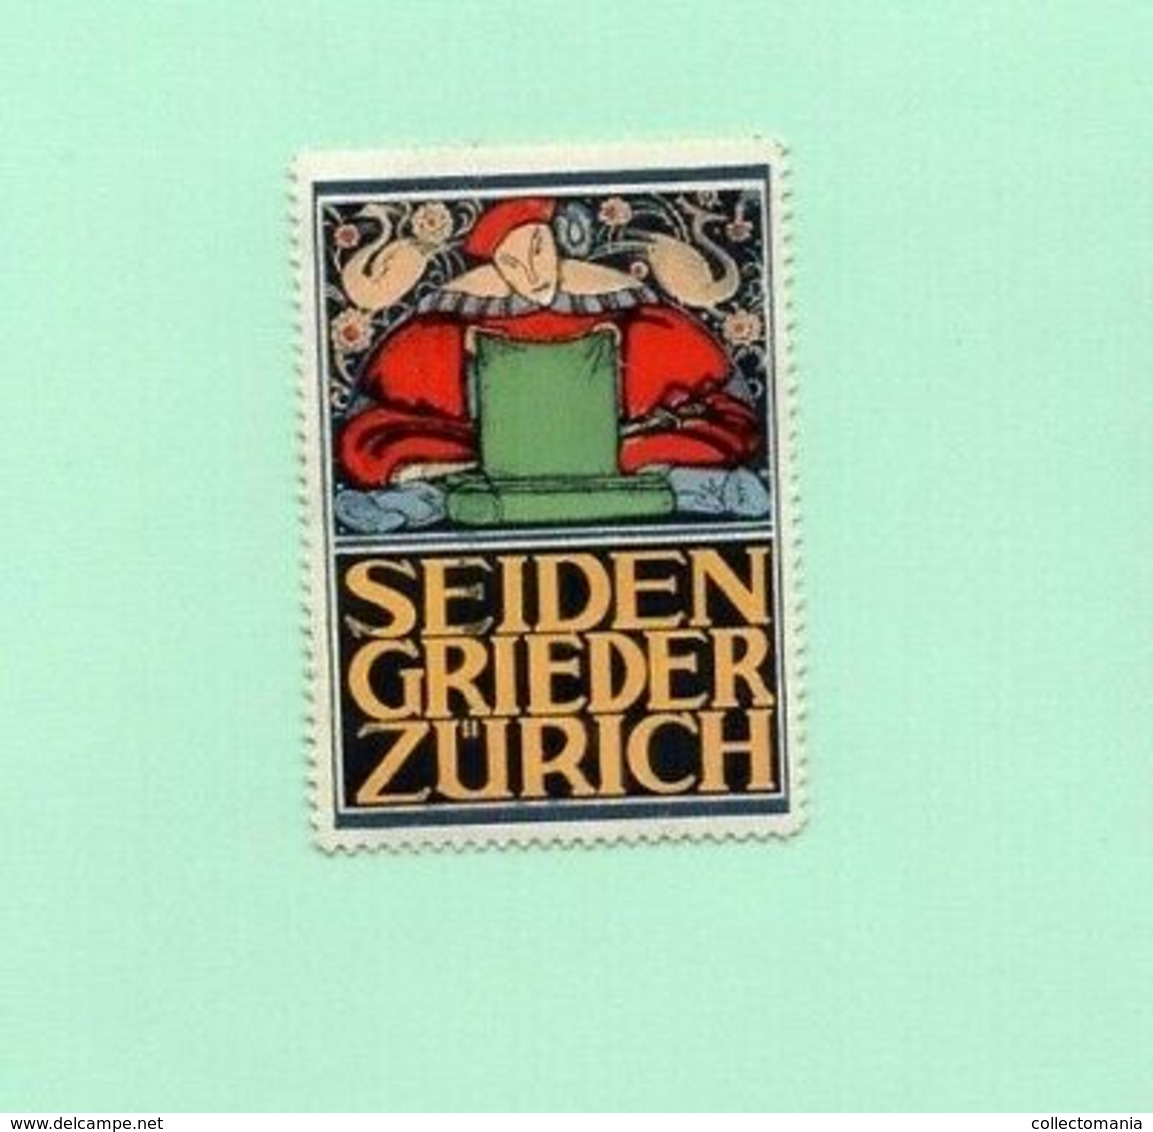 6 Poster Stamps Suisse Switserland Zürich Pflegerinnen Schüle Seiden Spinner Theater 1914 Tuberculose  ZURICH Marken - Termalismo